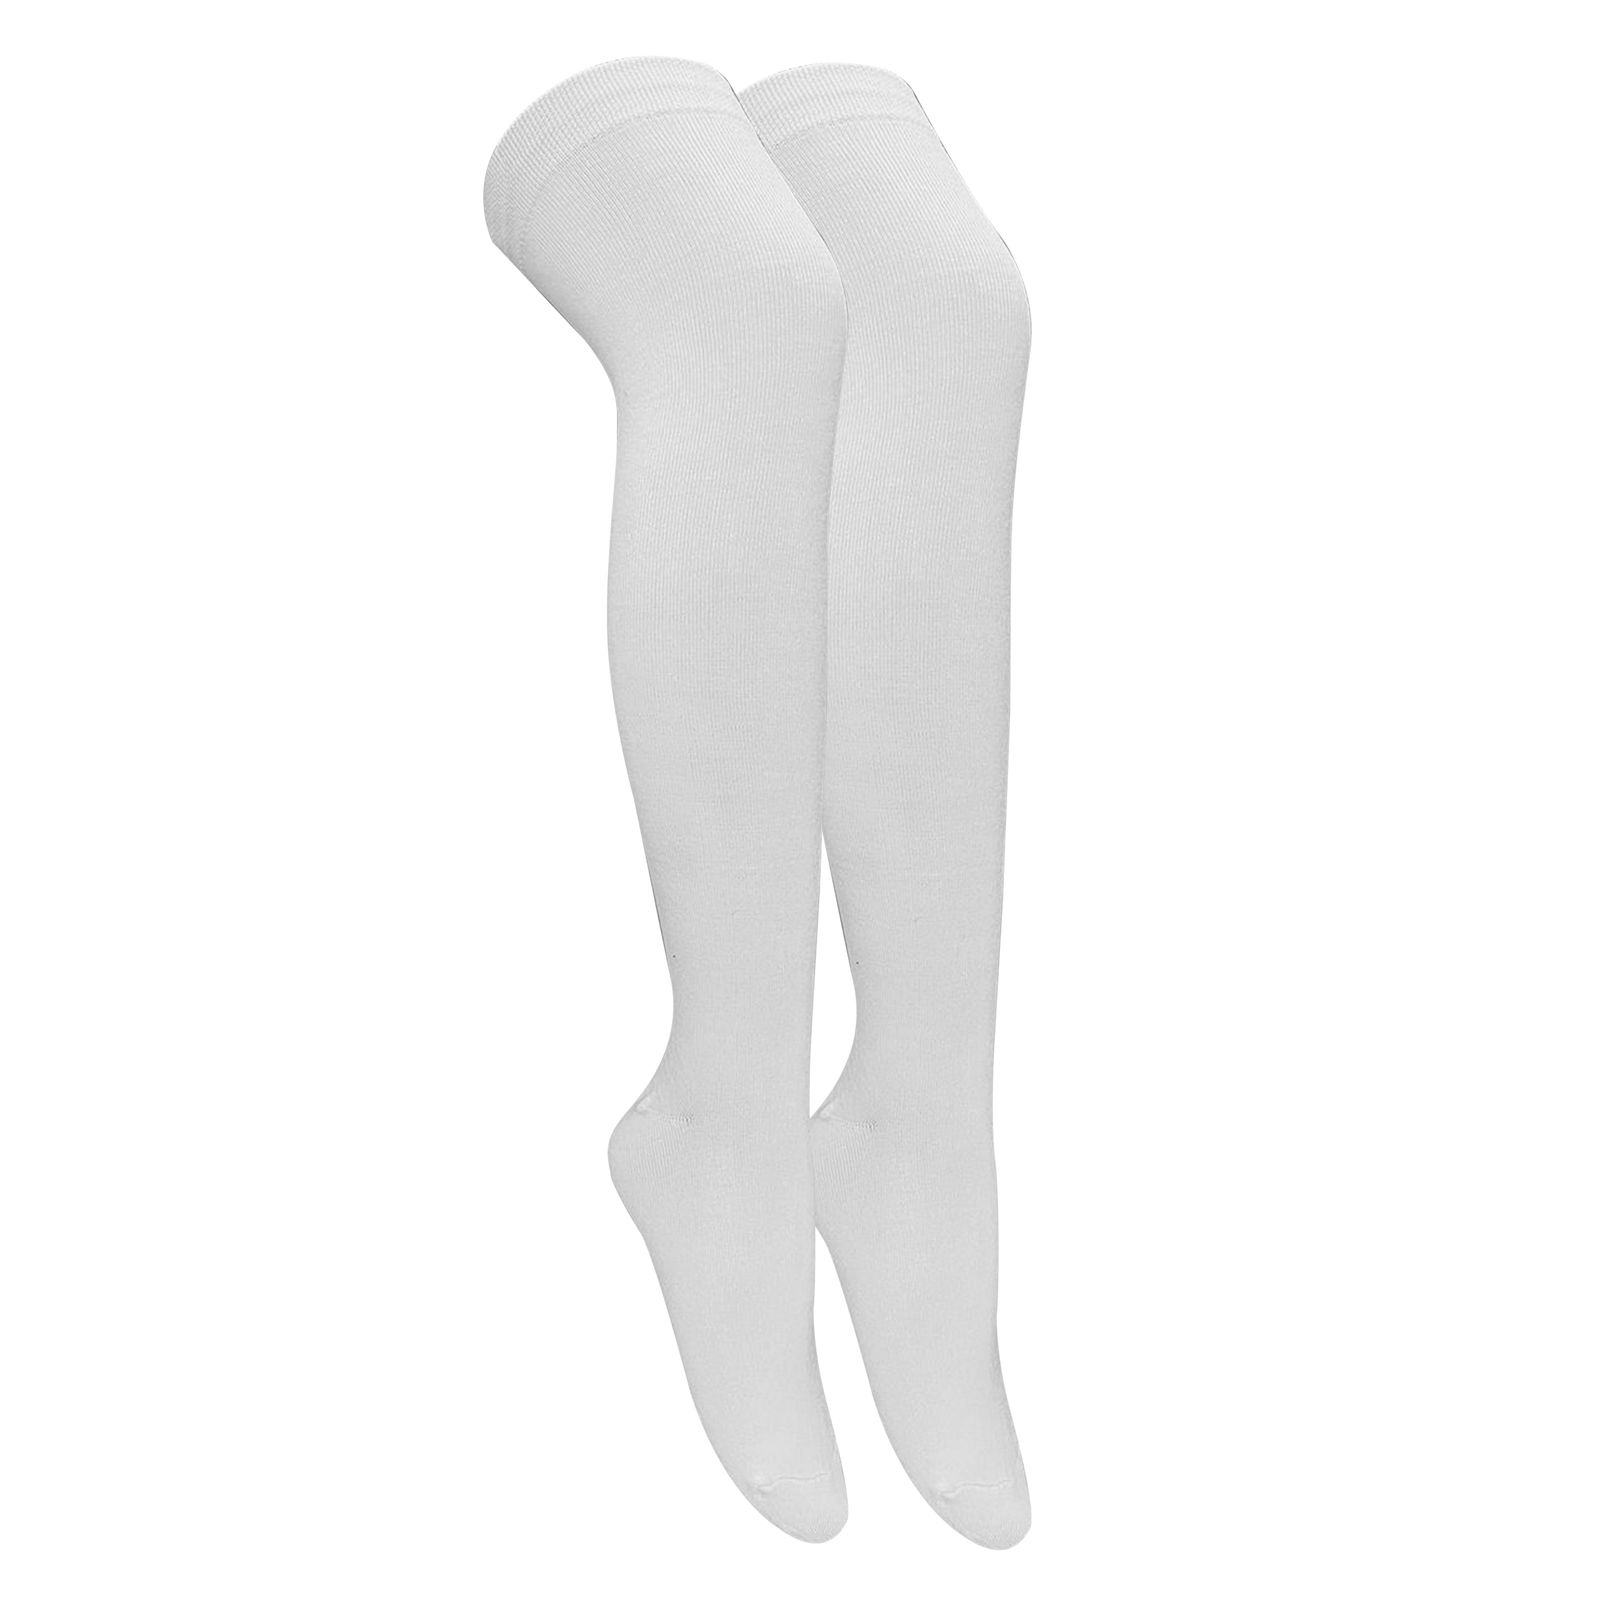 جوراب ساق بلند زنانه تن پوش هنگامه مدل بالا زانو ساده کد W-011 -  - 1